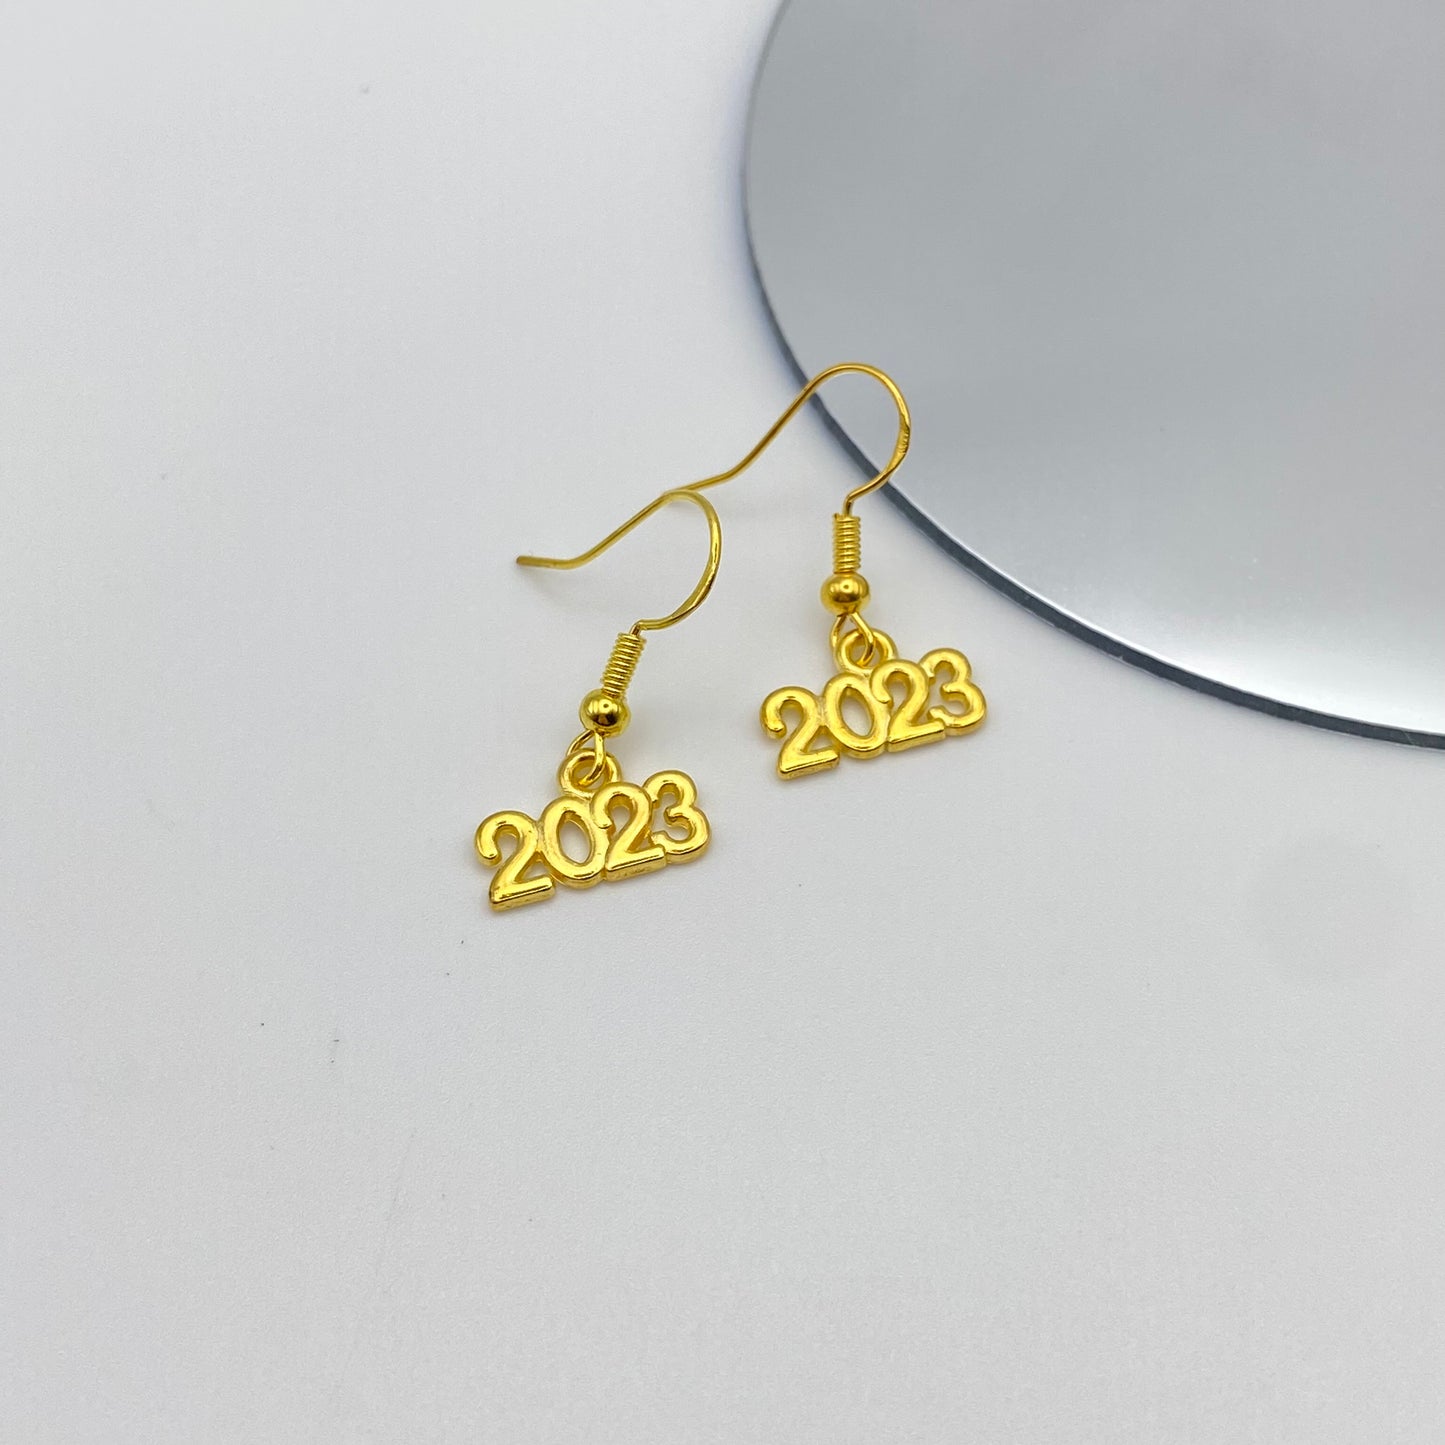 Gold 2023 Earrings